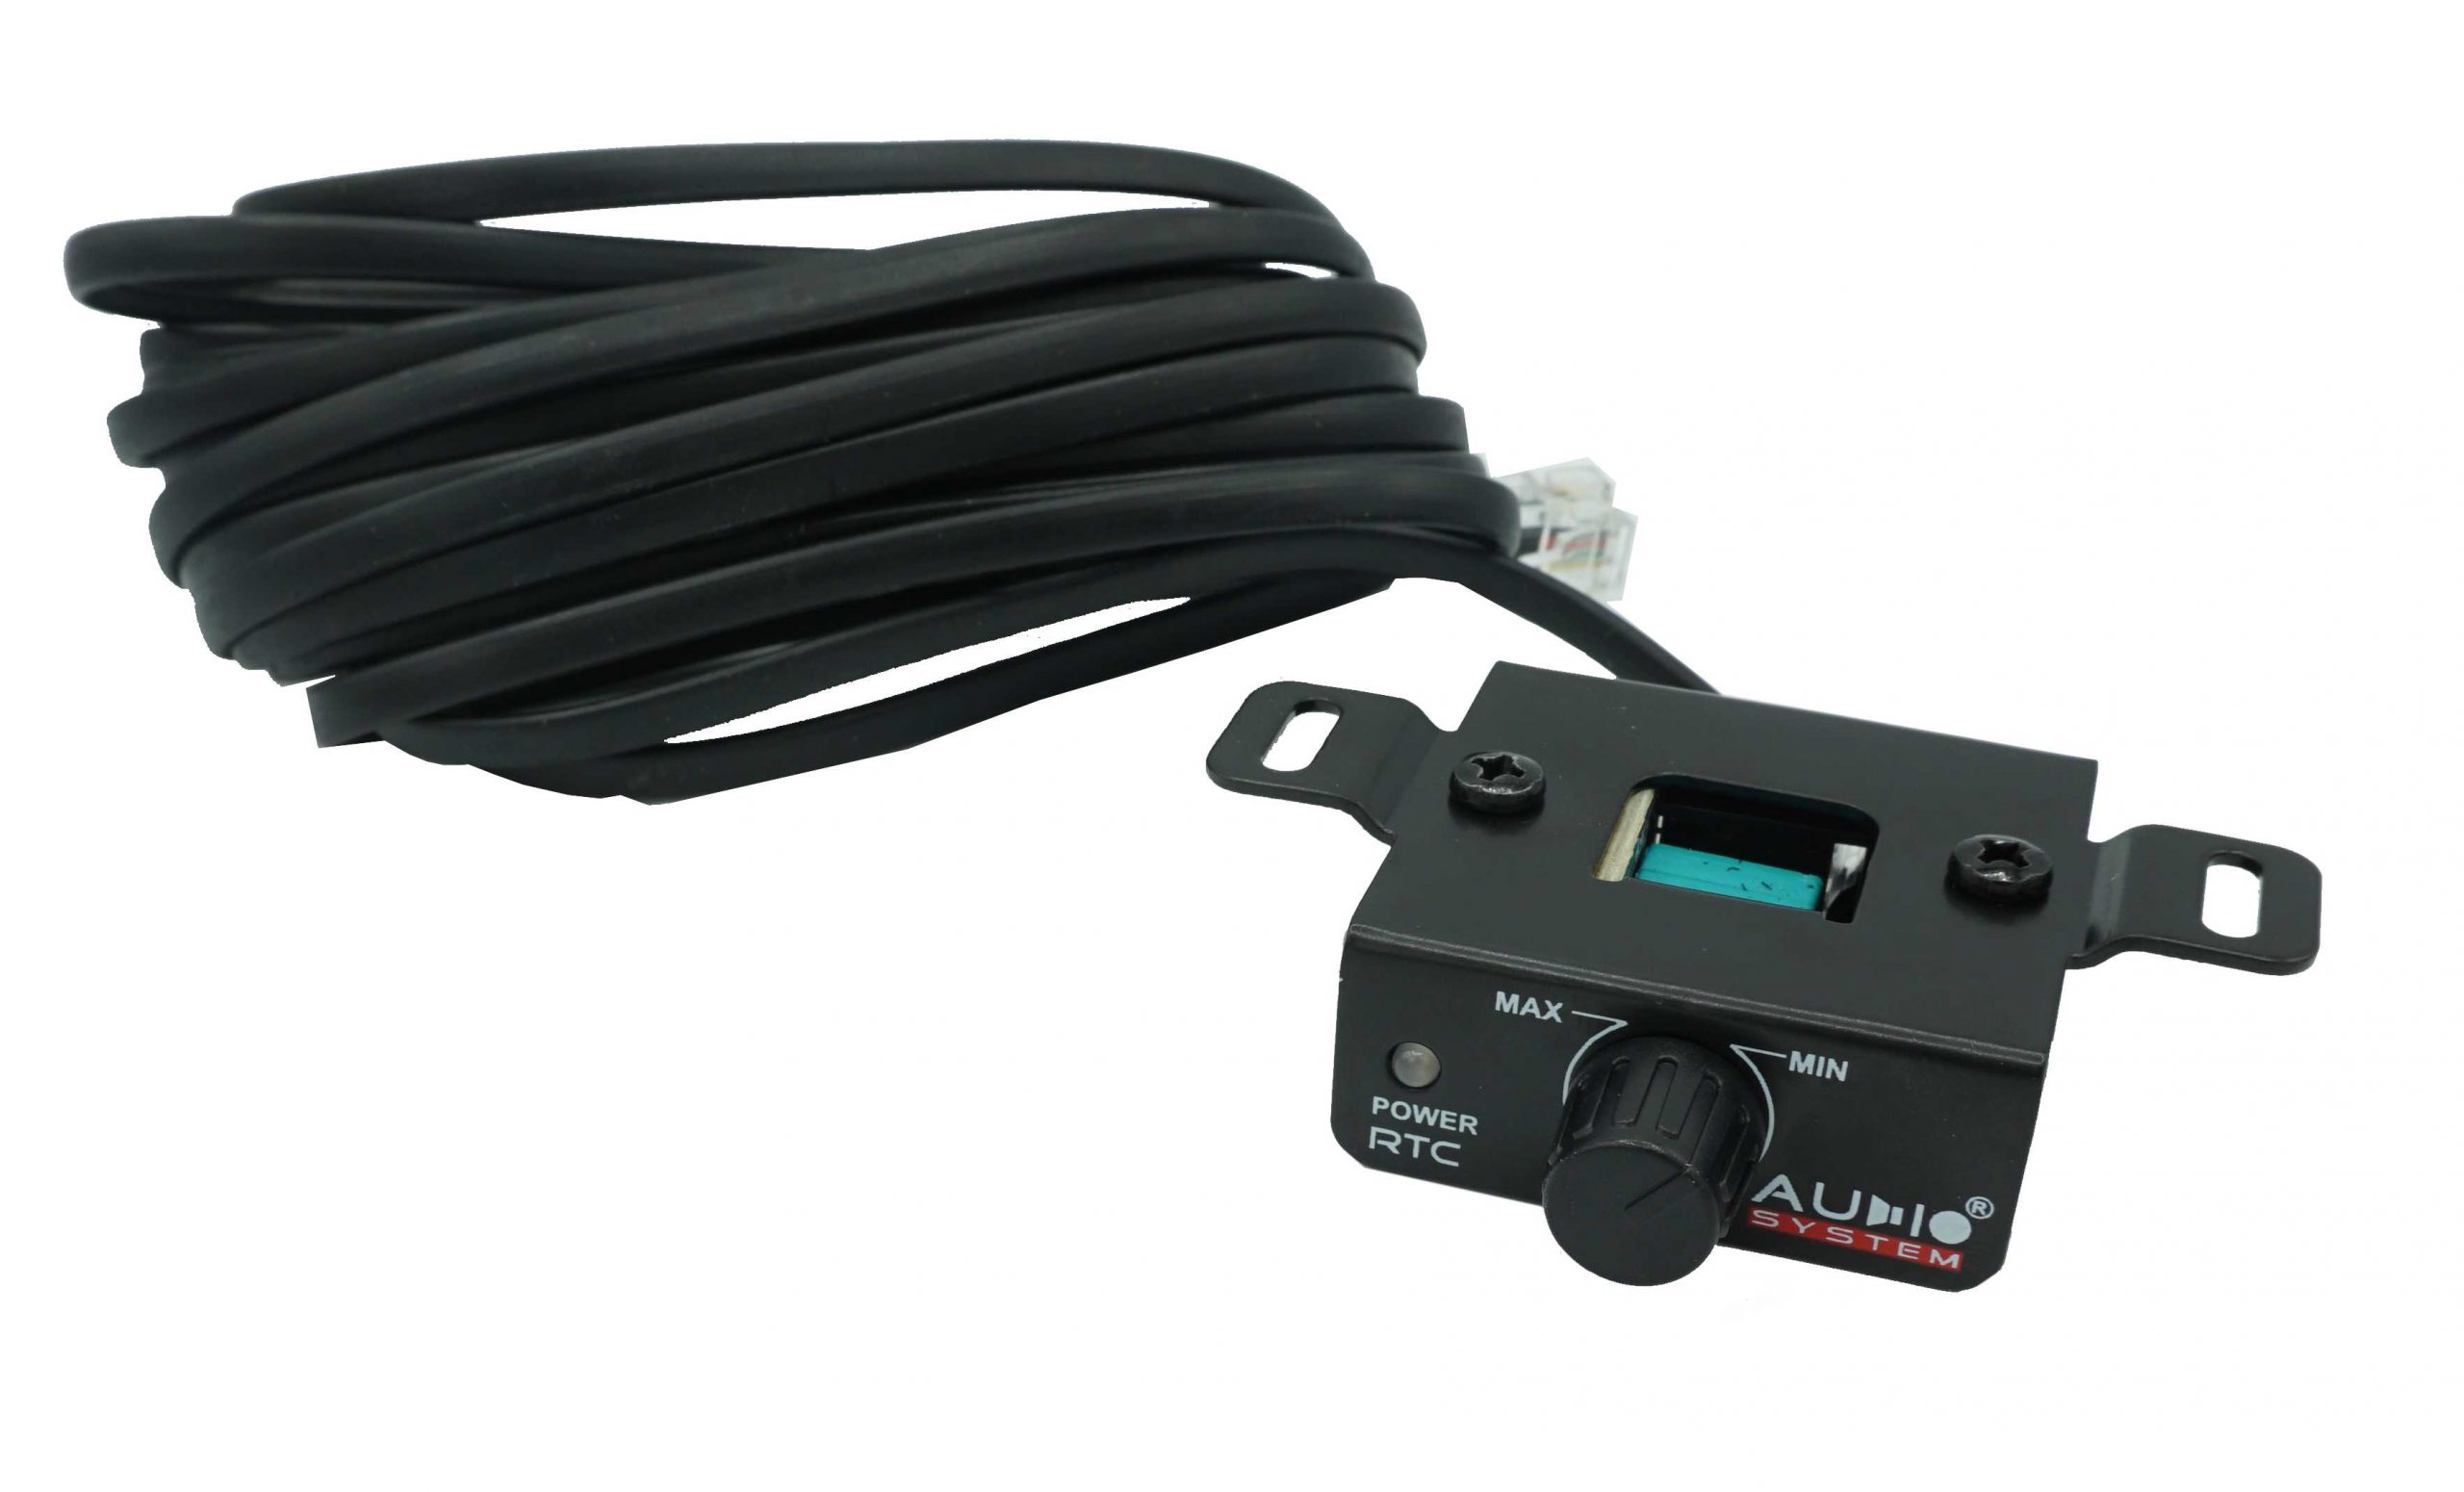 Audio System M850.1D Digitaler 1 Kanal Verstärker Amplifier 850 Watt RMS + Kabelfernbedienung